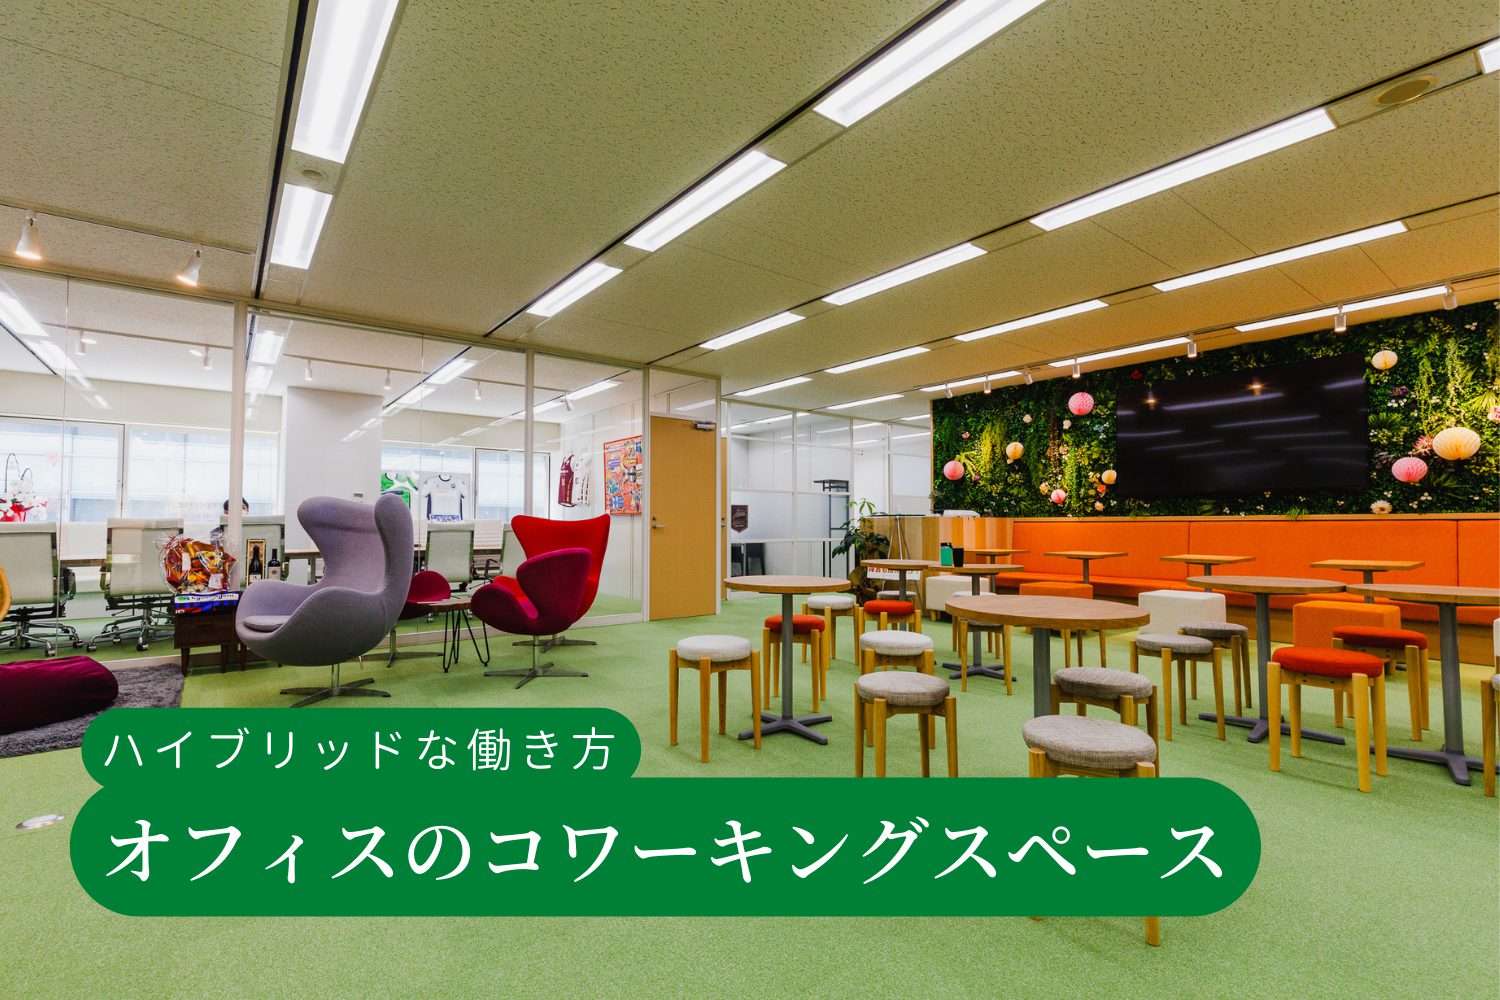 【パーティション施工事例 ≫ 東京都新宿区】既存オフィスにパーテーションでコワーキングスペースを設ける